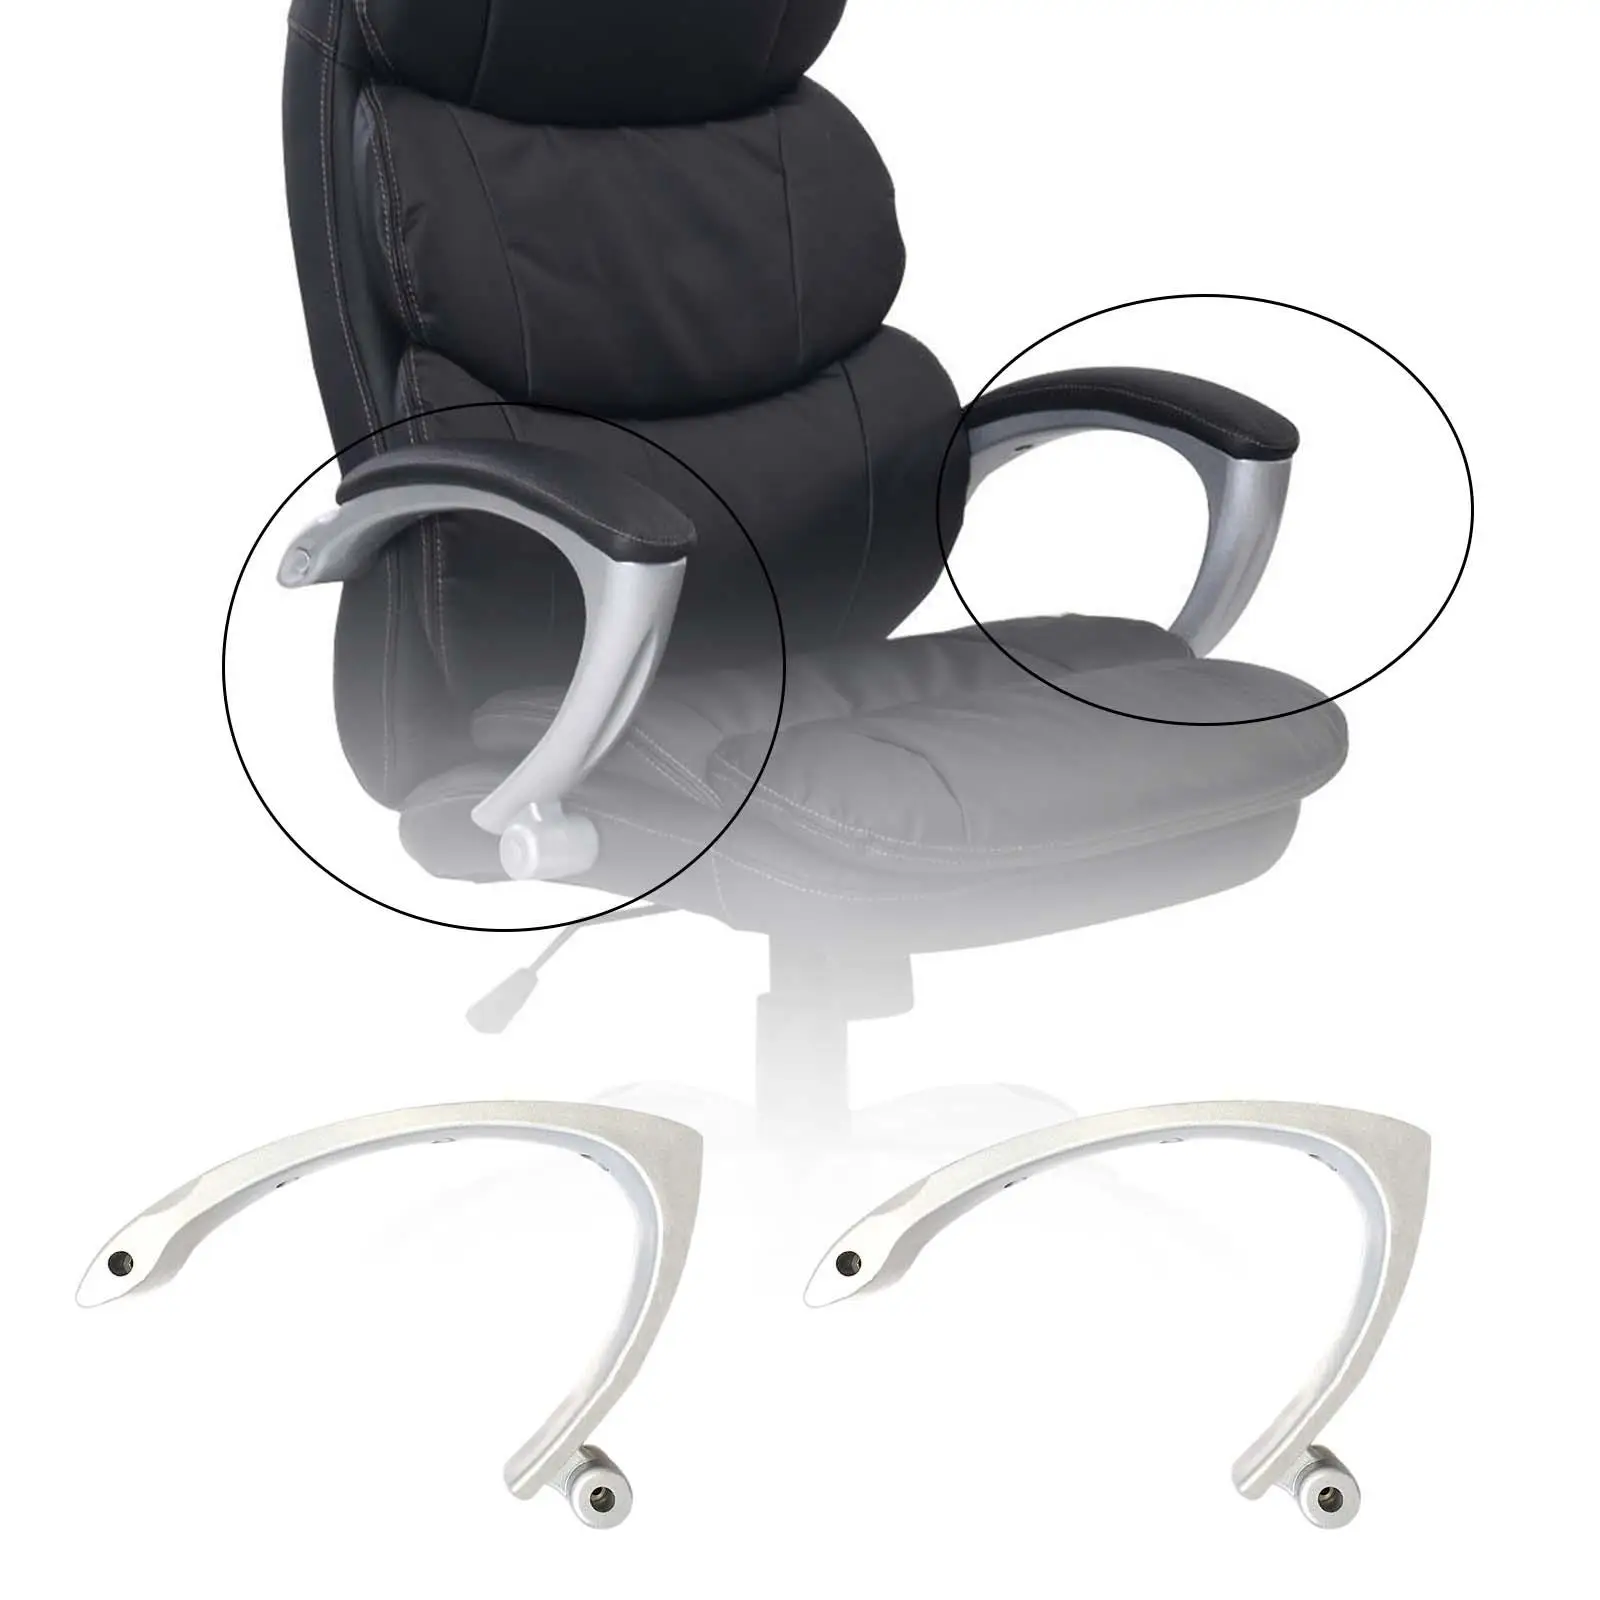 Комплект из 2 предметов для подъема подлокотника кресла и подставки для ног, прочный для большинства игровых стульев